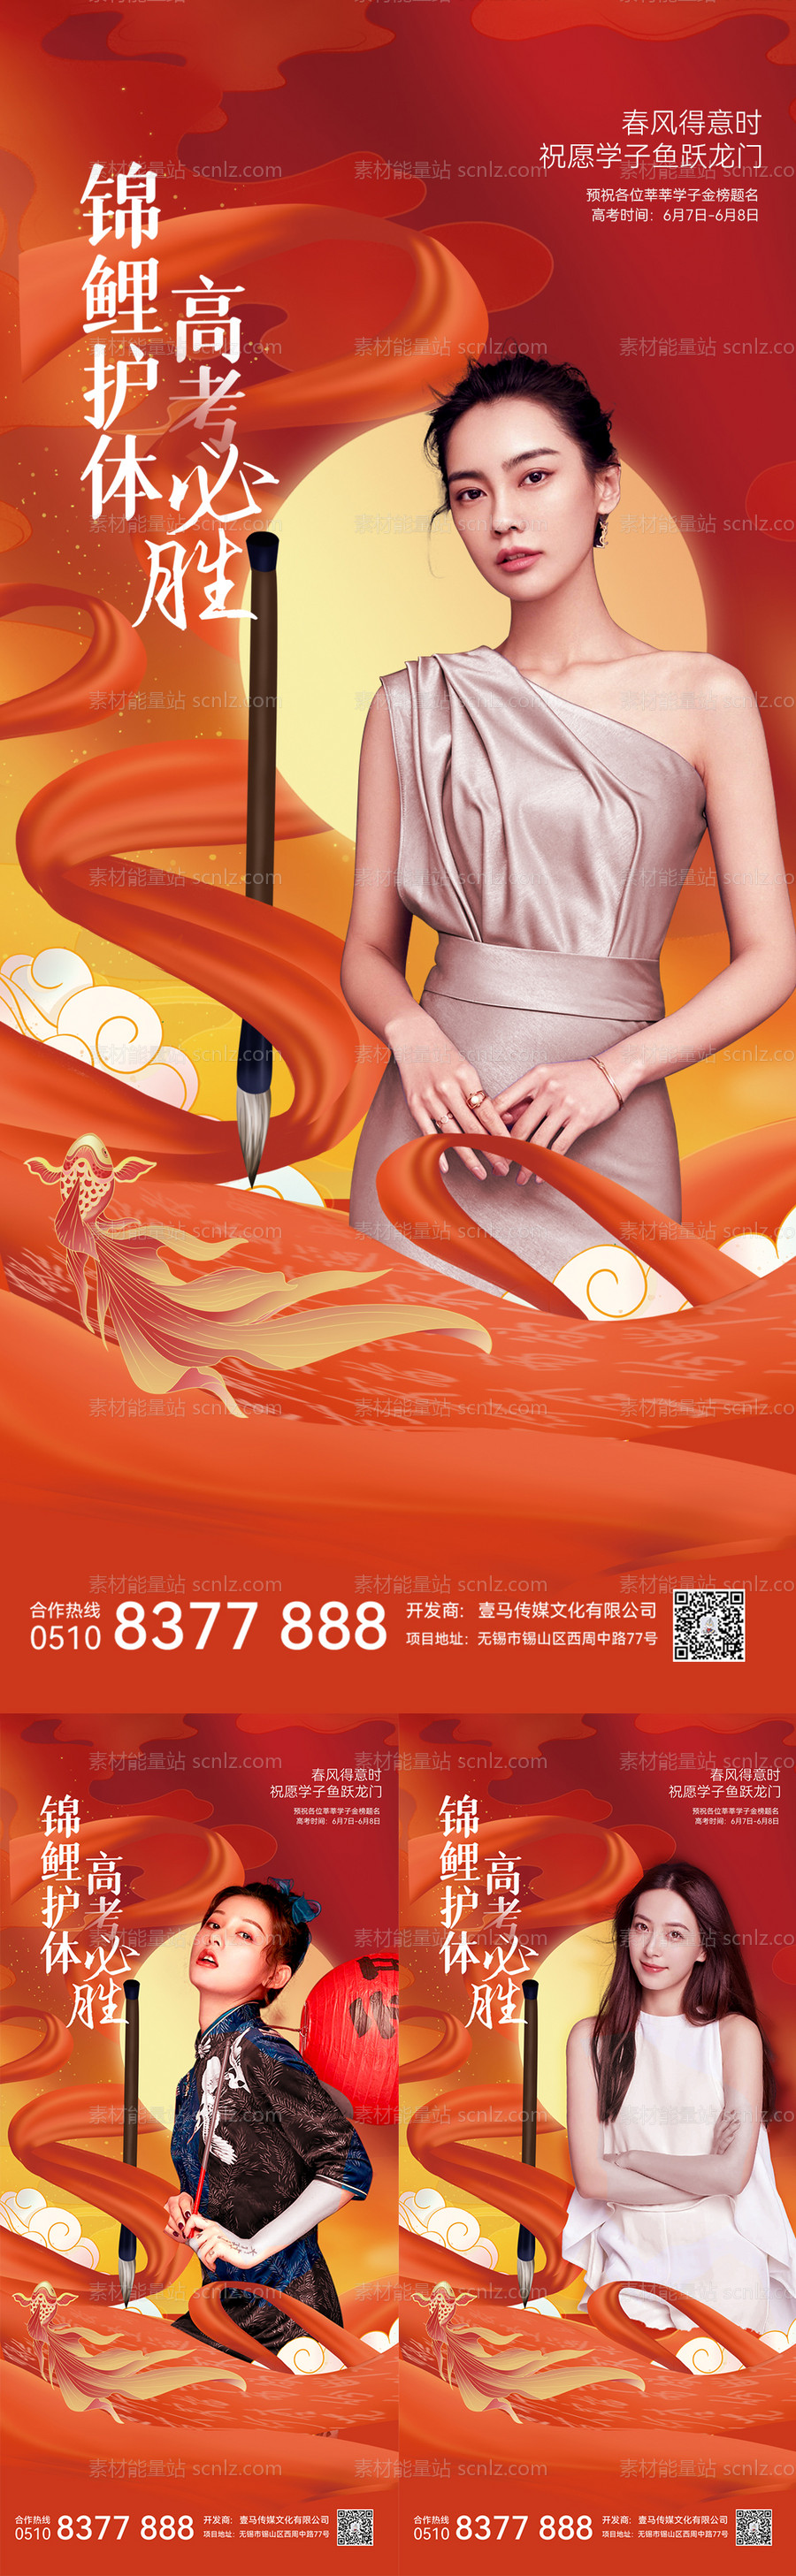 素材能量站-医美活动高考中国风系列海报